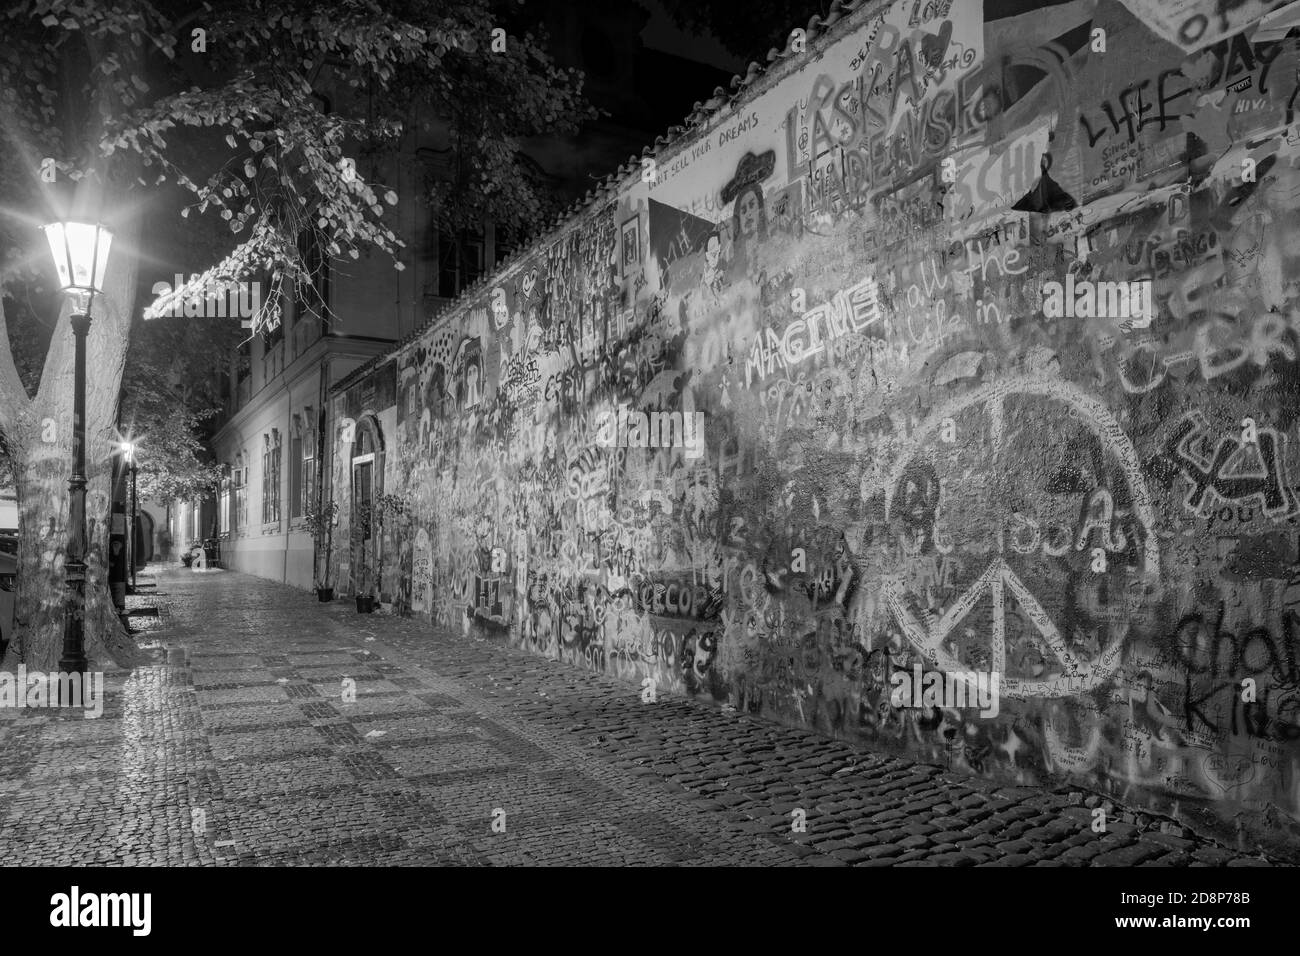 PRAGUE, RÉPUBLIQUE TCHÈQUE - 17 OCTOBRE 2018 : le mur de paix de John Lennon créé en 1980. Banque D'Images